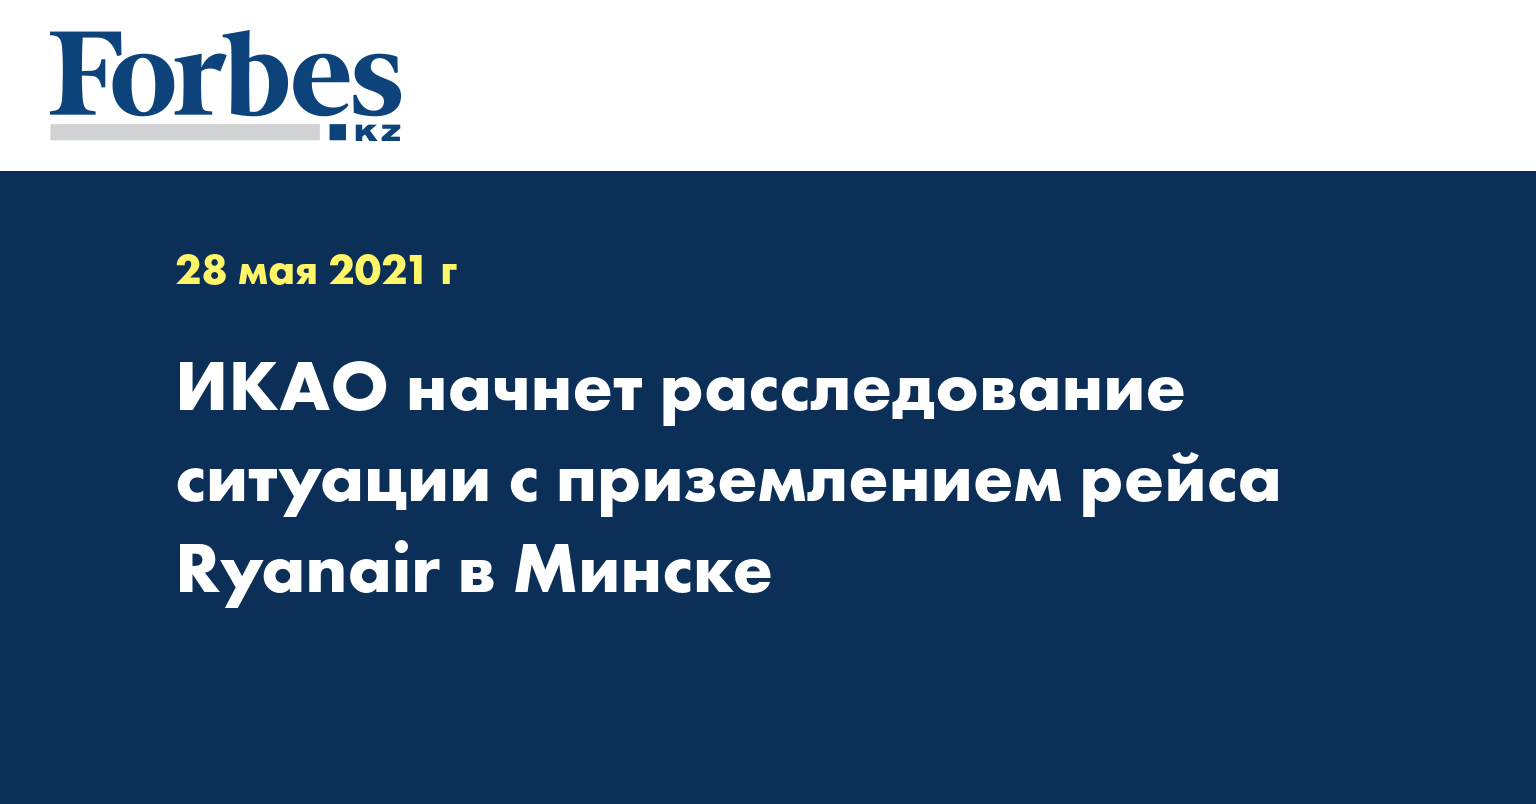 ИКАО начнет расследование ситуации с приземлением рейса Ryanair в Минске